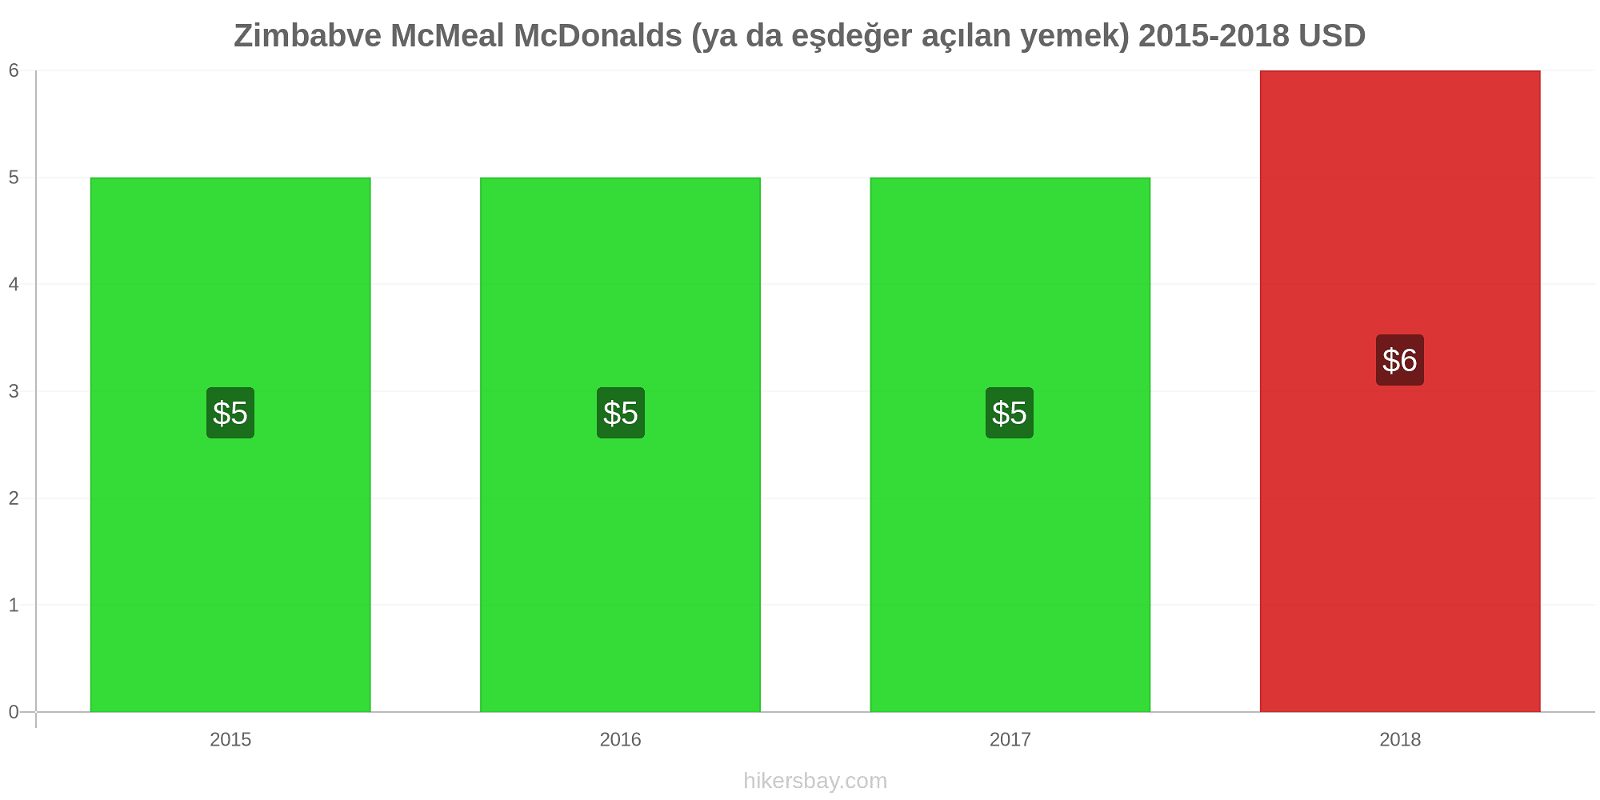 Zimbabve fiyat değişiklikleri McMeal McDonalds (ya da eşdeğer açılan yemek) hikersbay.com